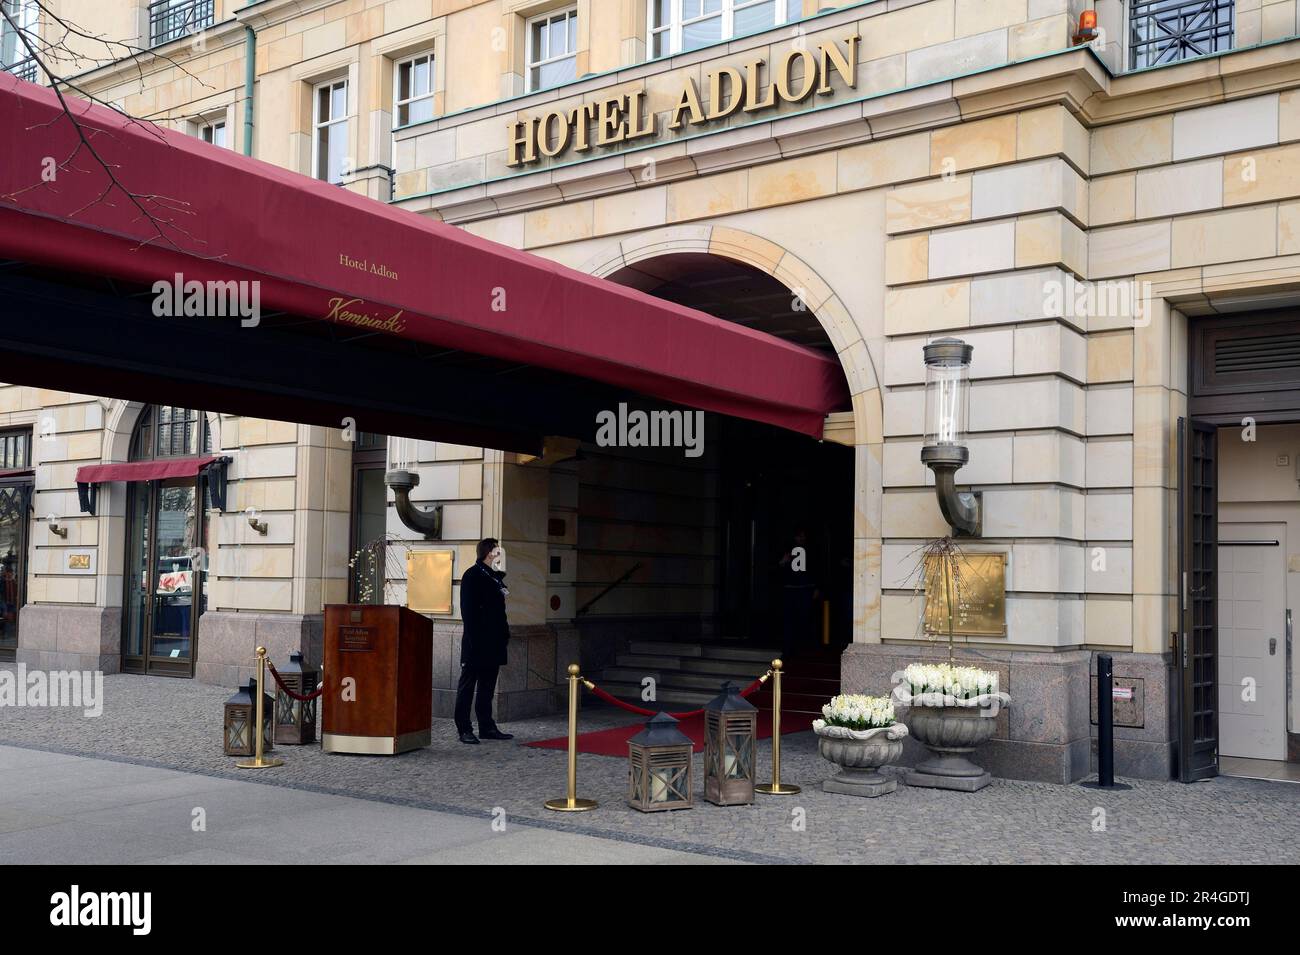 Hotel adlon eingang -Fotos und -Bildmaterial in hoher Auflösung – Alamy